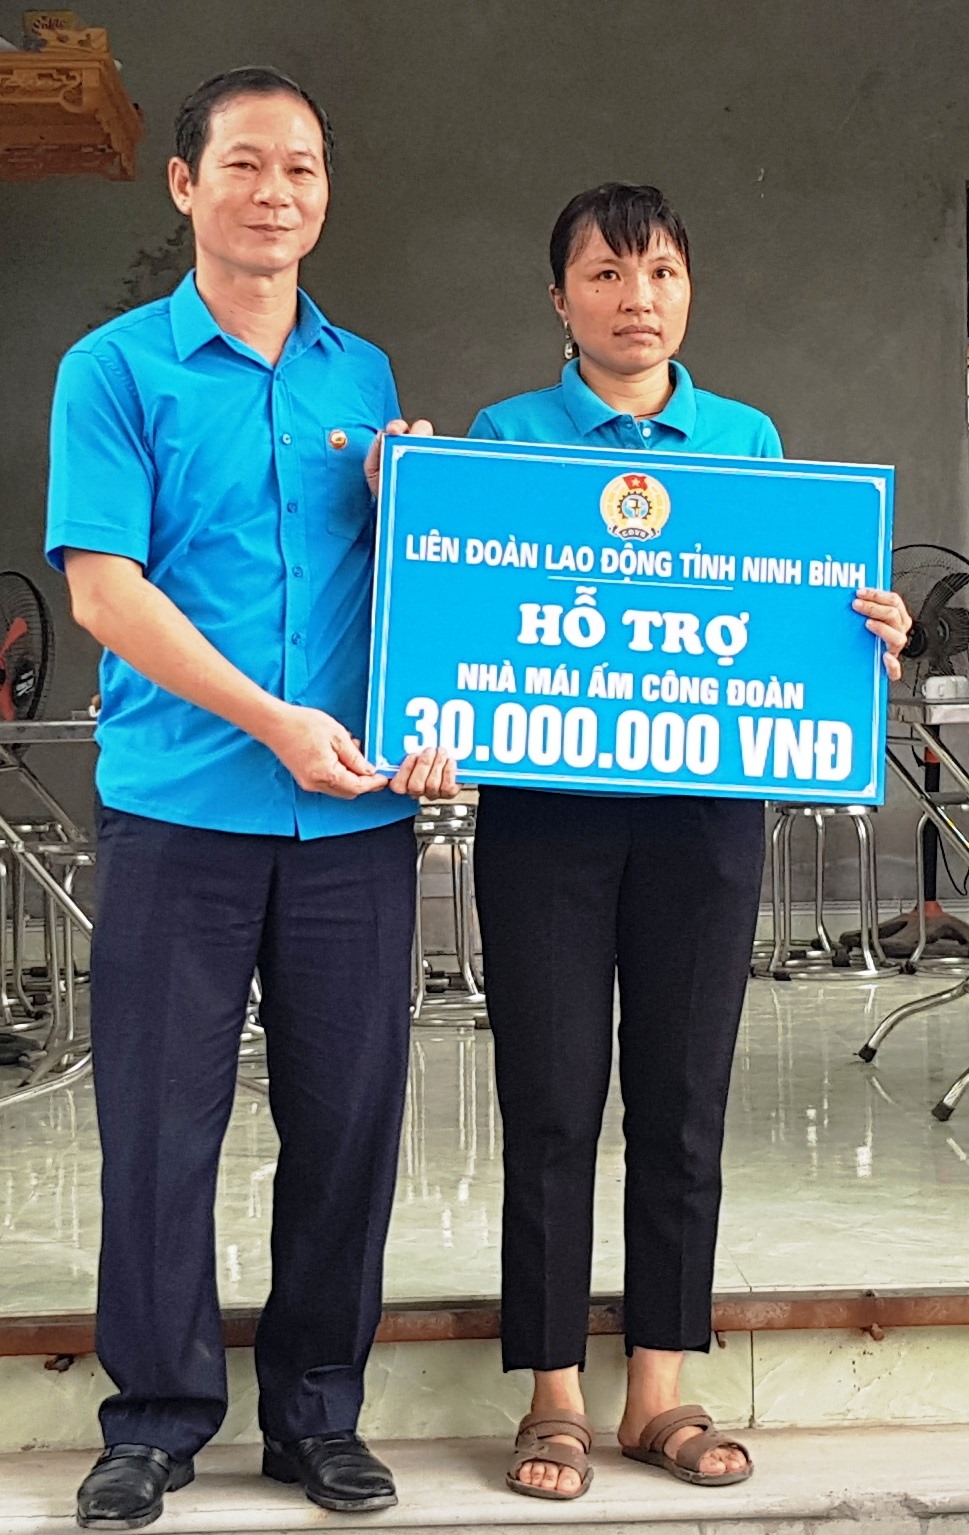 Đồng chí Trần Kim Long, Phó chủ tịch LĐLĐ tỉnh Ninh Bình trao tiền hỗ trợ cho gia đình chị Vũ Thị Thúy Hằng. Ảnh: NT